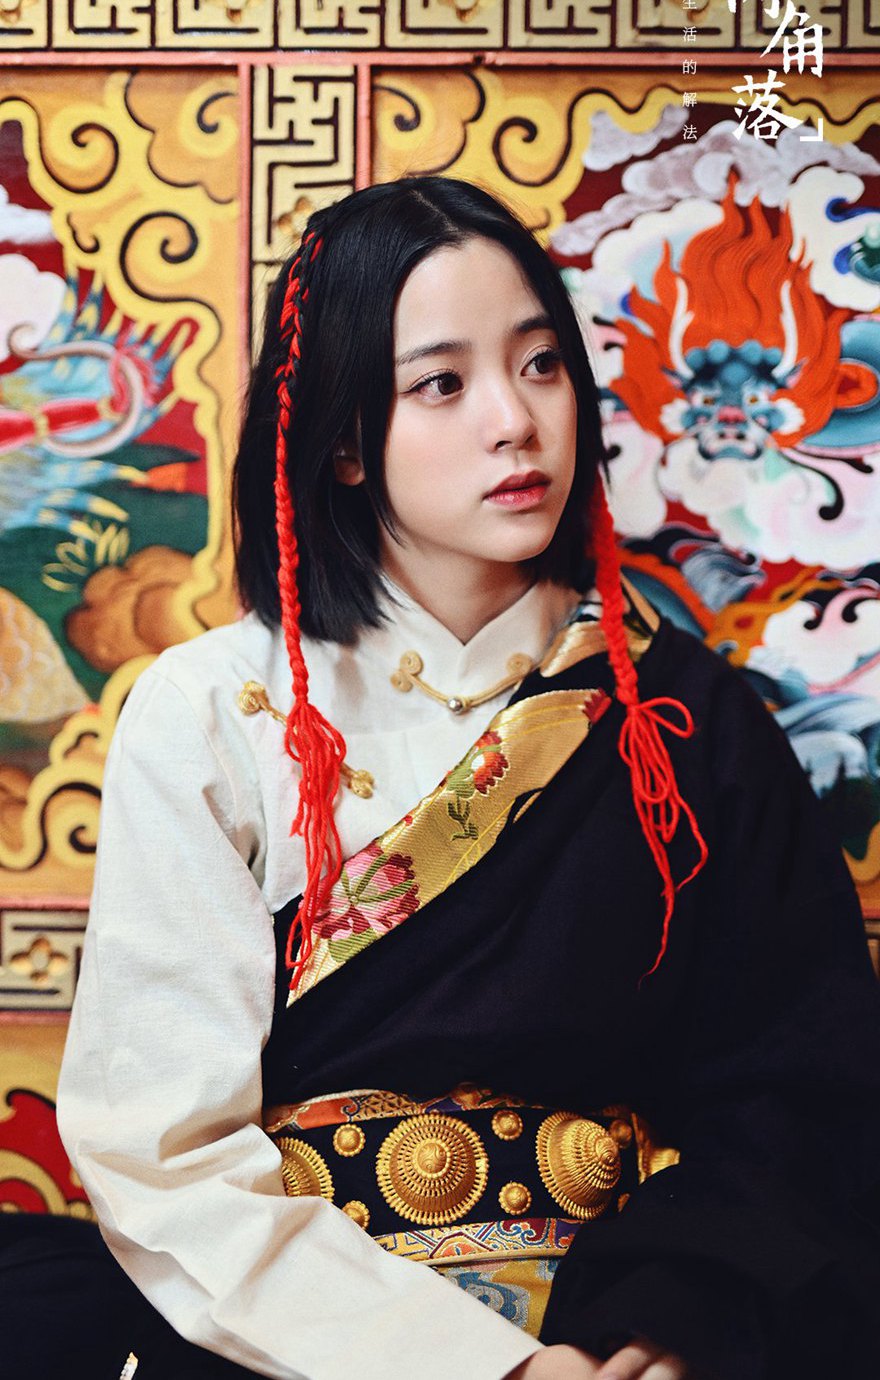 欧阳娜娜《奇遇·人间角落》理塘篇章穿藏族服饰图片  第2张